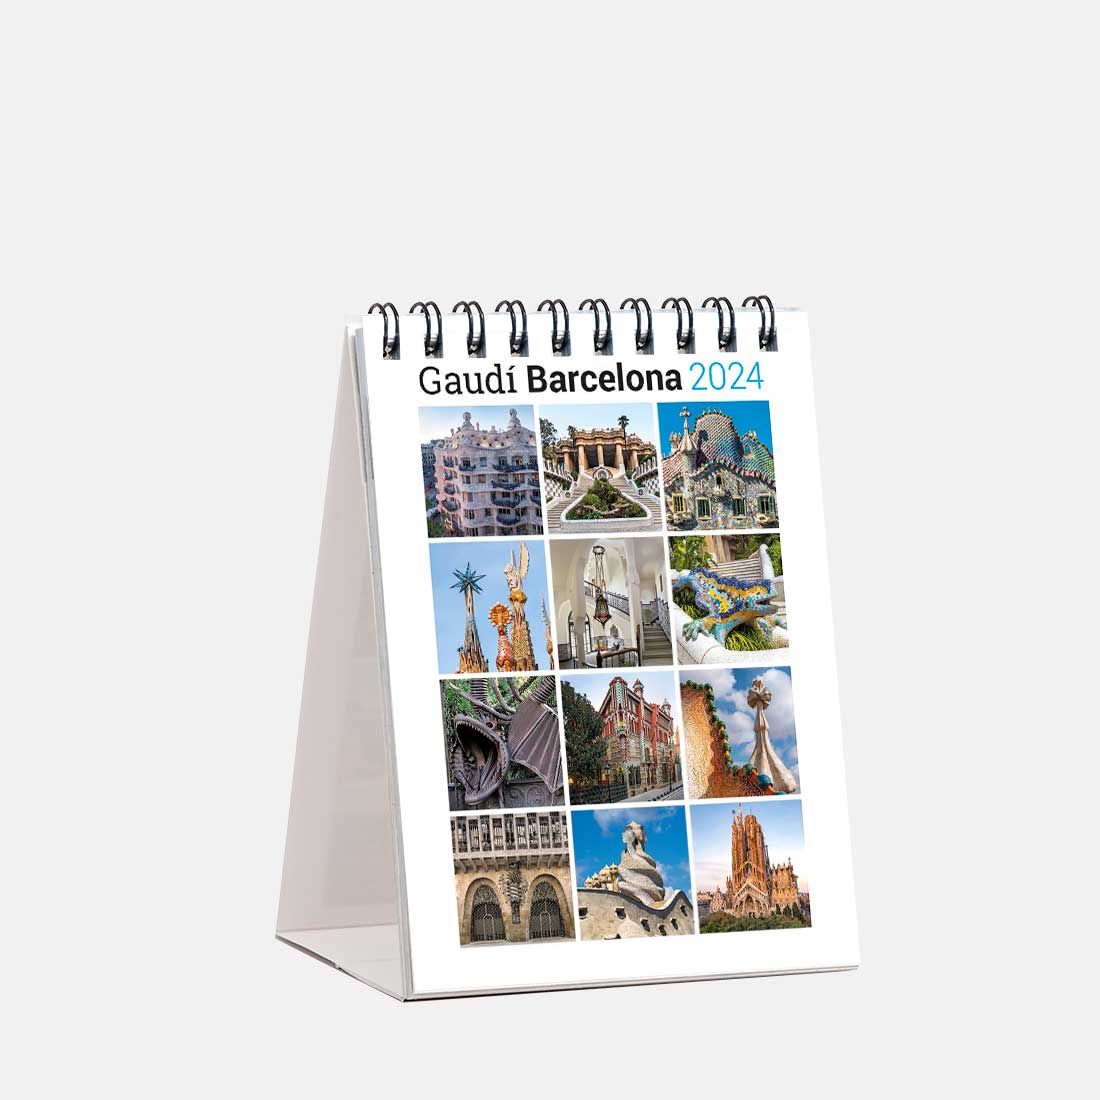 Calendario 2024 Gaudí sm24g1 d calendario sobremesa 2024 gaudi barcelona